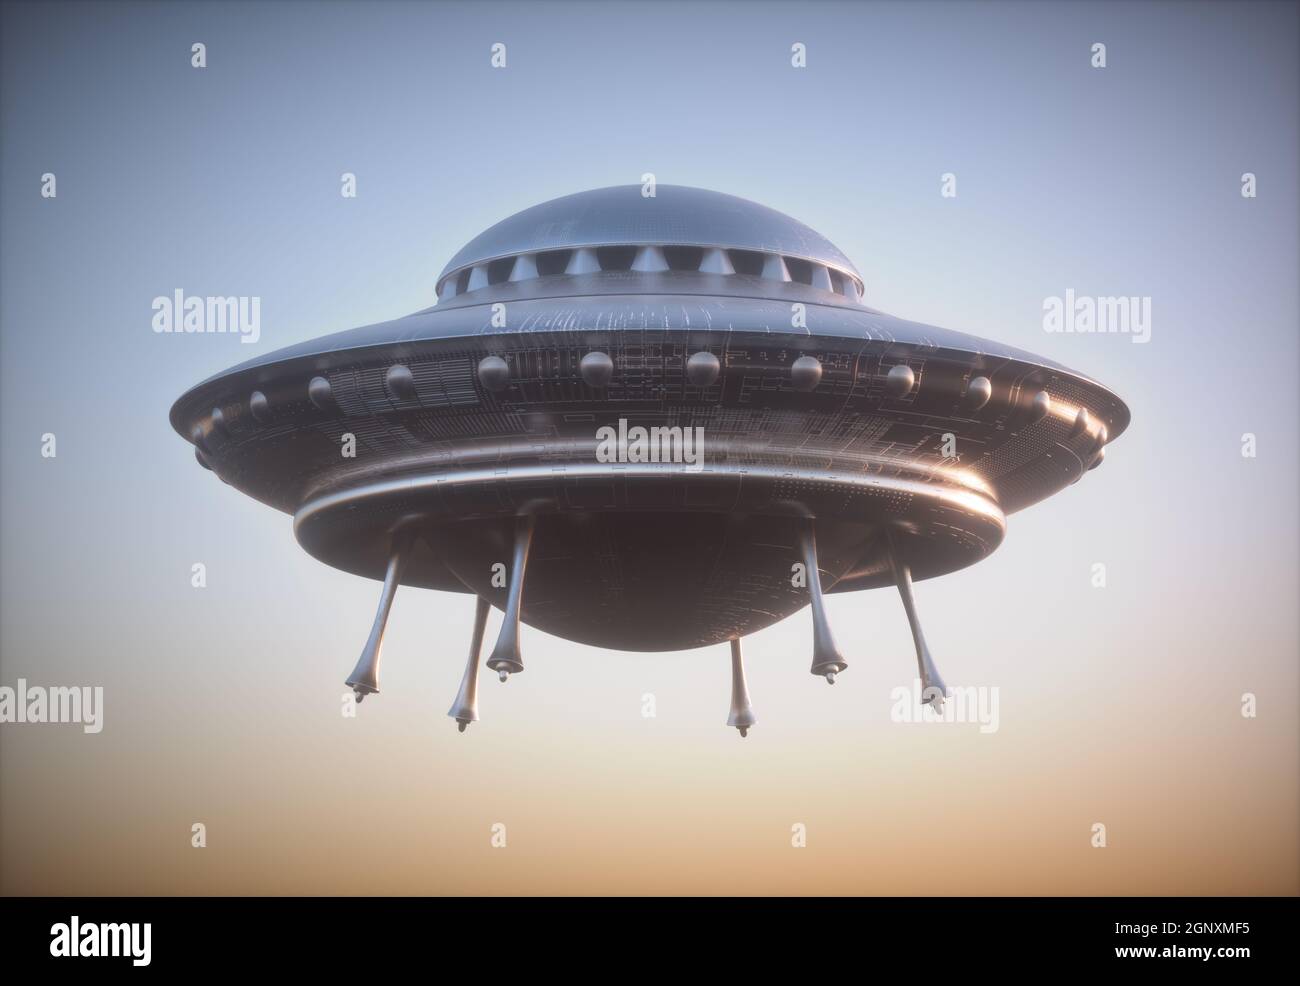 Nicht identifiziertes fliegendes Objekt - UFO. Beschneidungspfad enthalten. Stockfoto